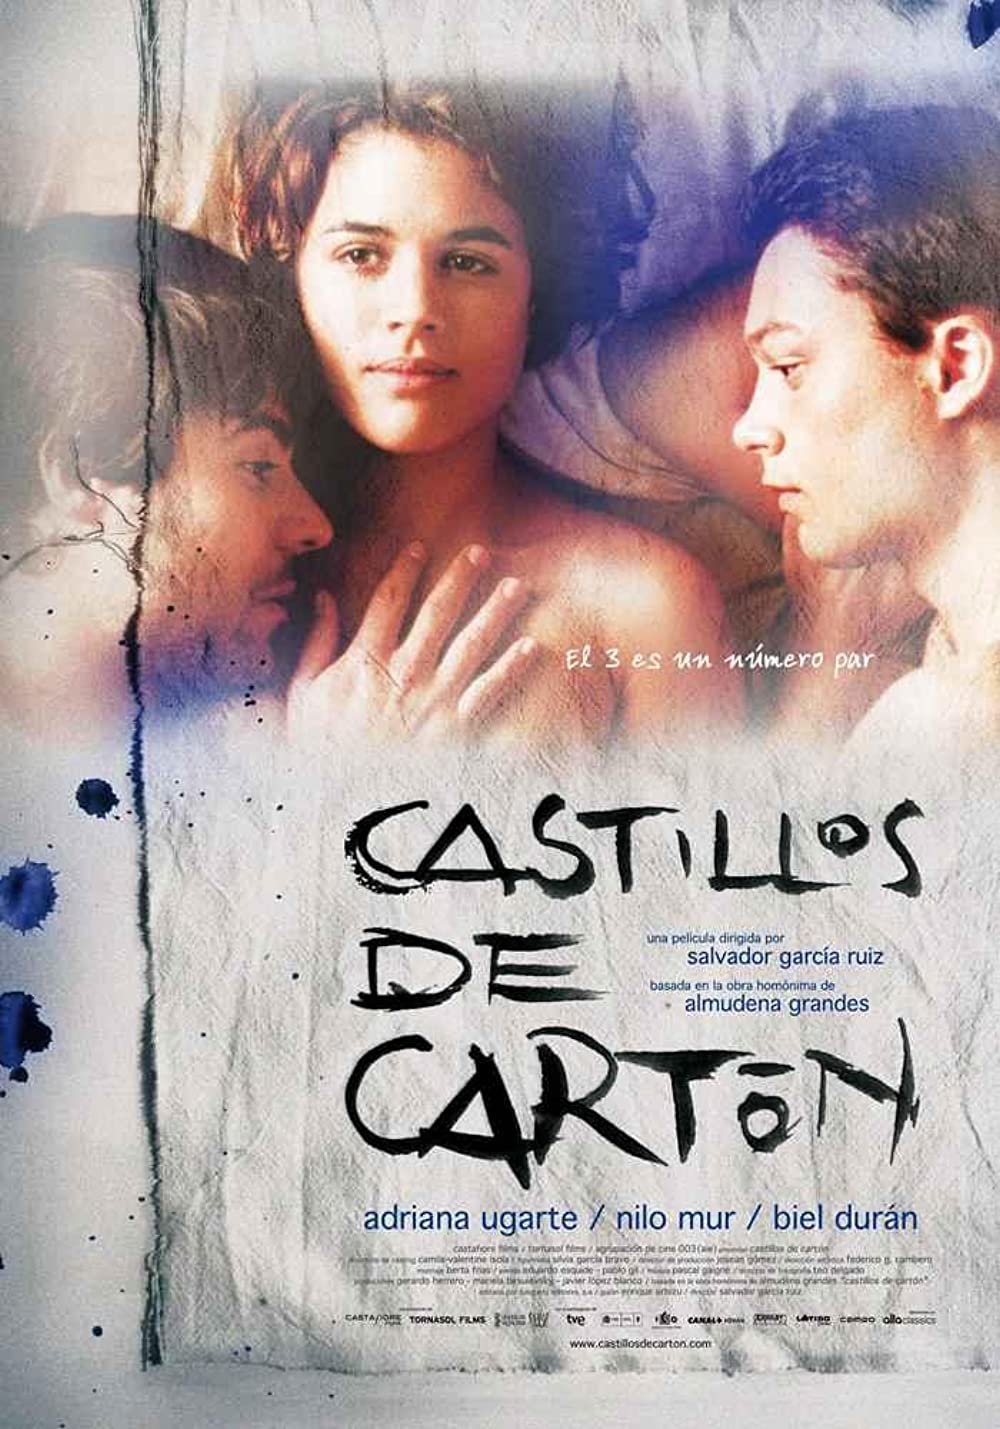 Castillos de cartón - 3some (2009)